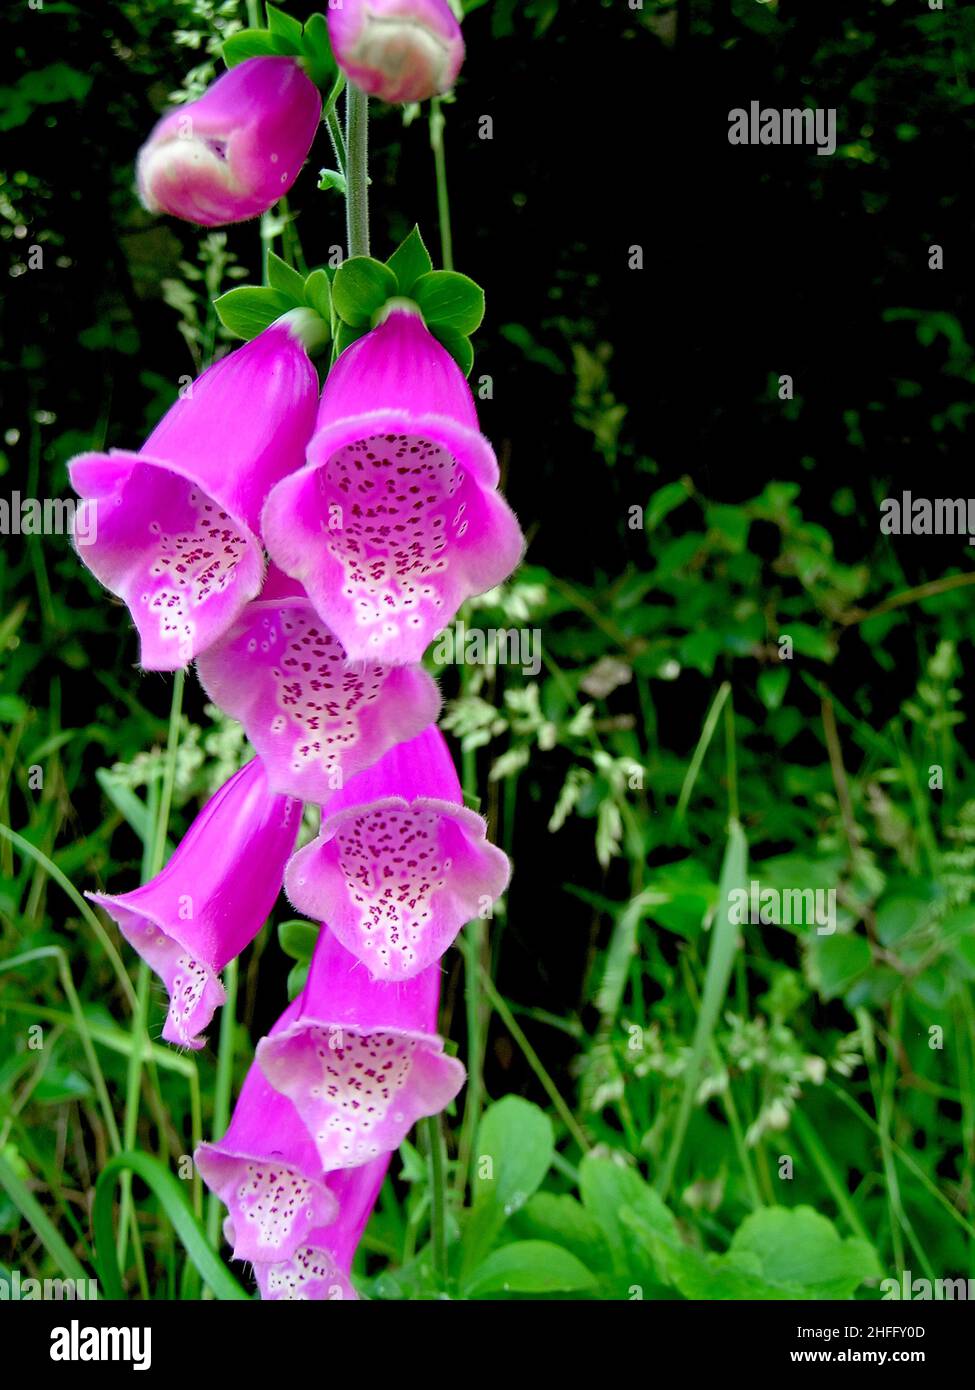 Digitalis purpurea foxglove Stock Photo